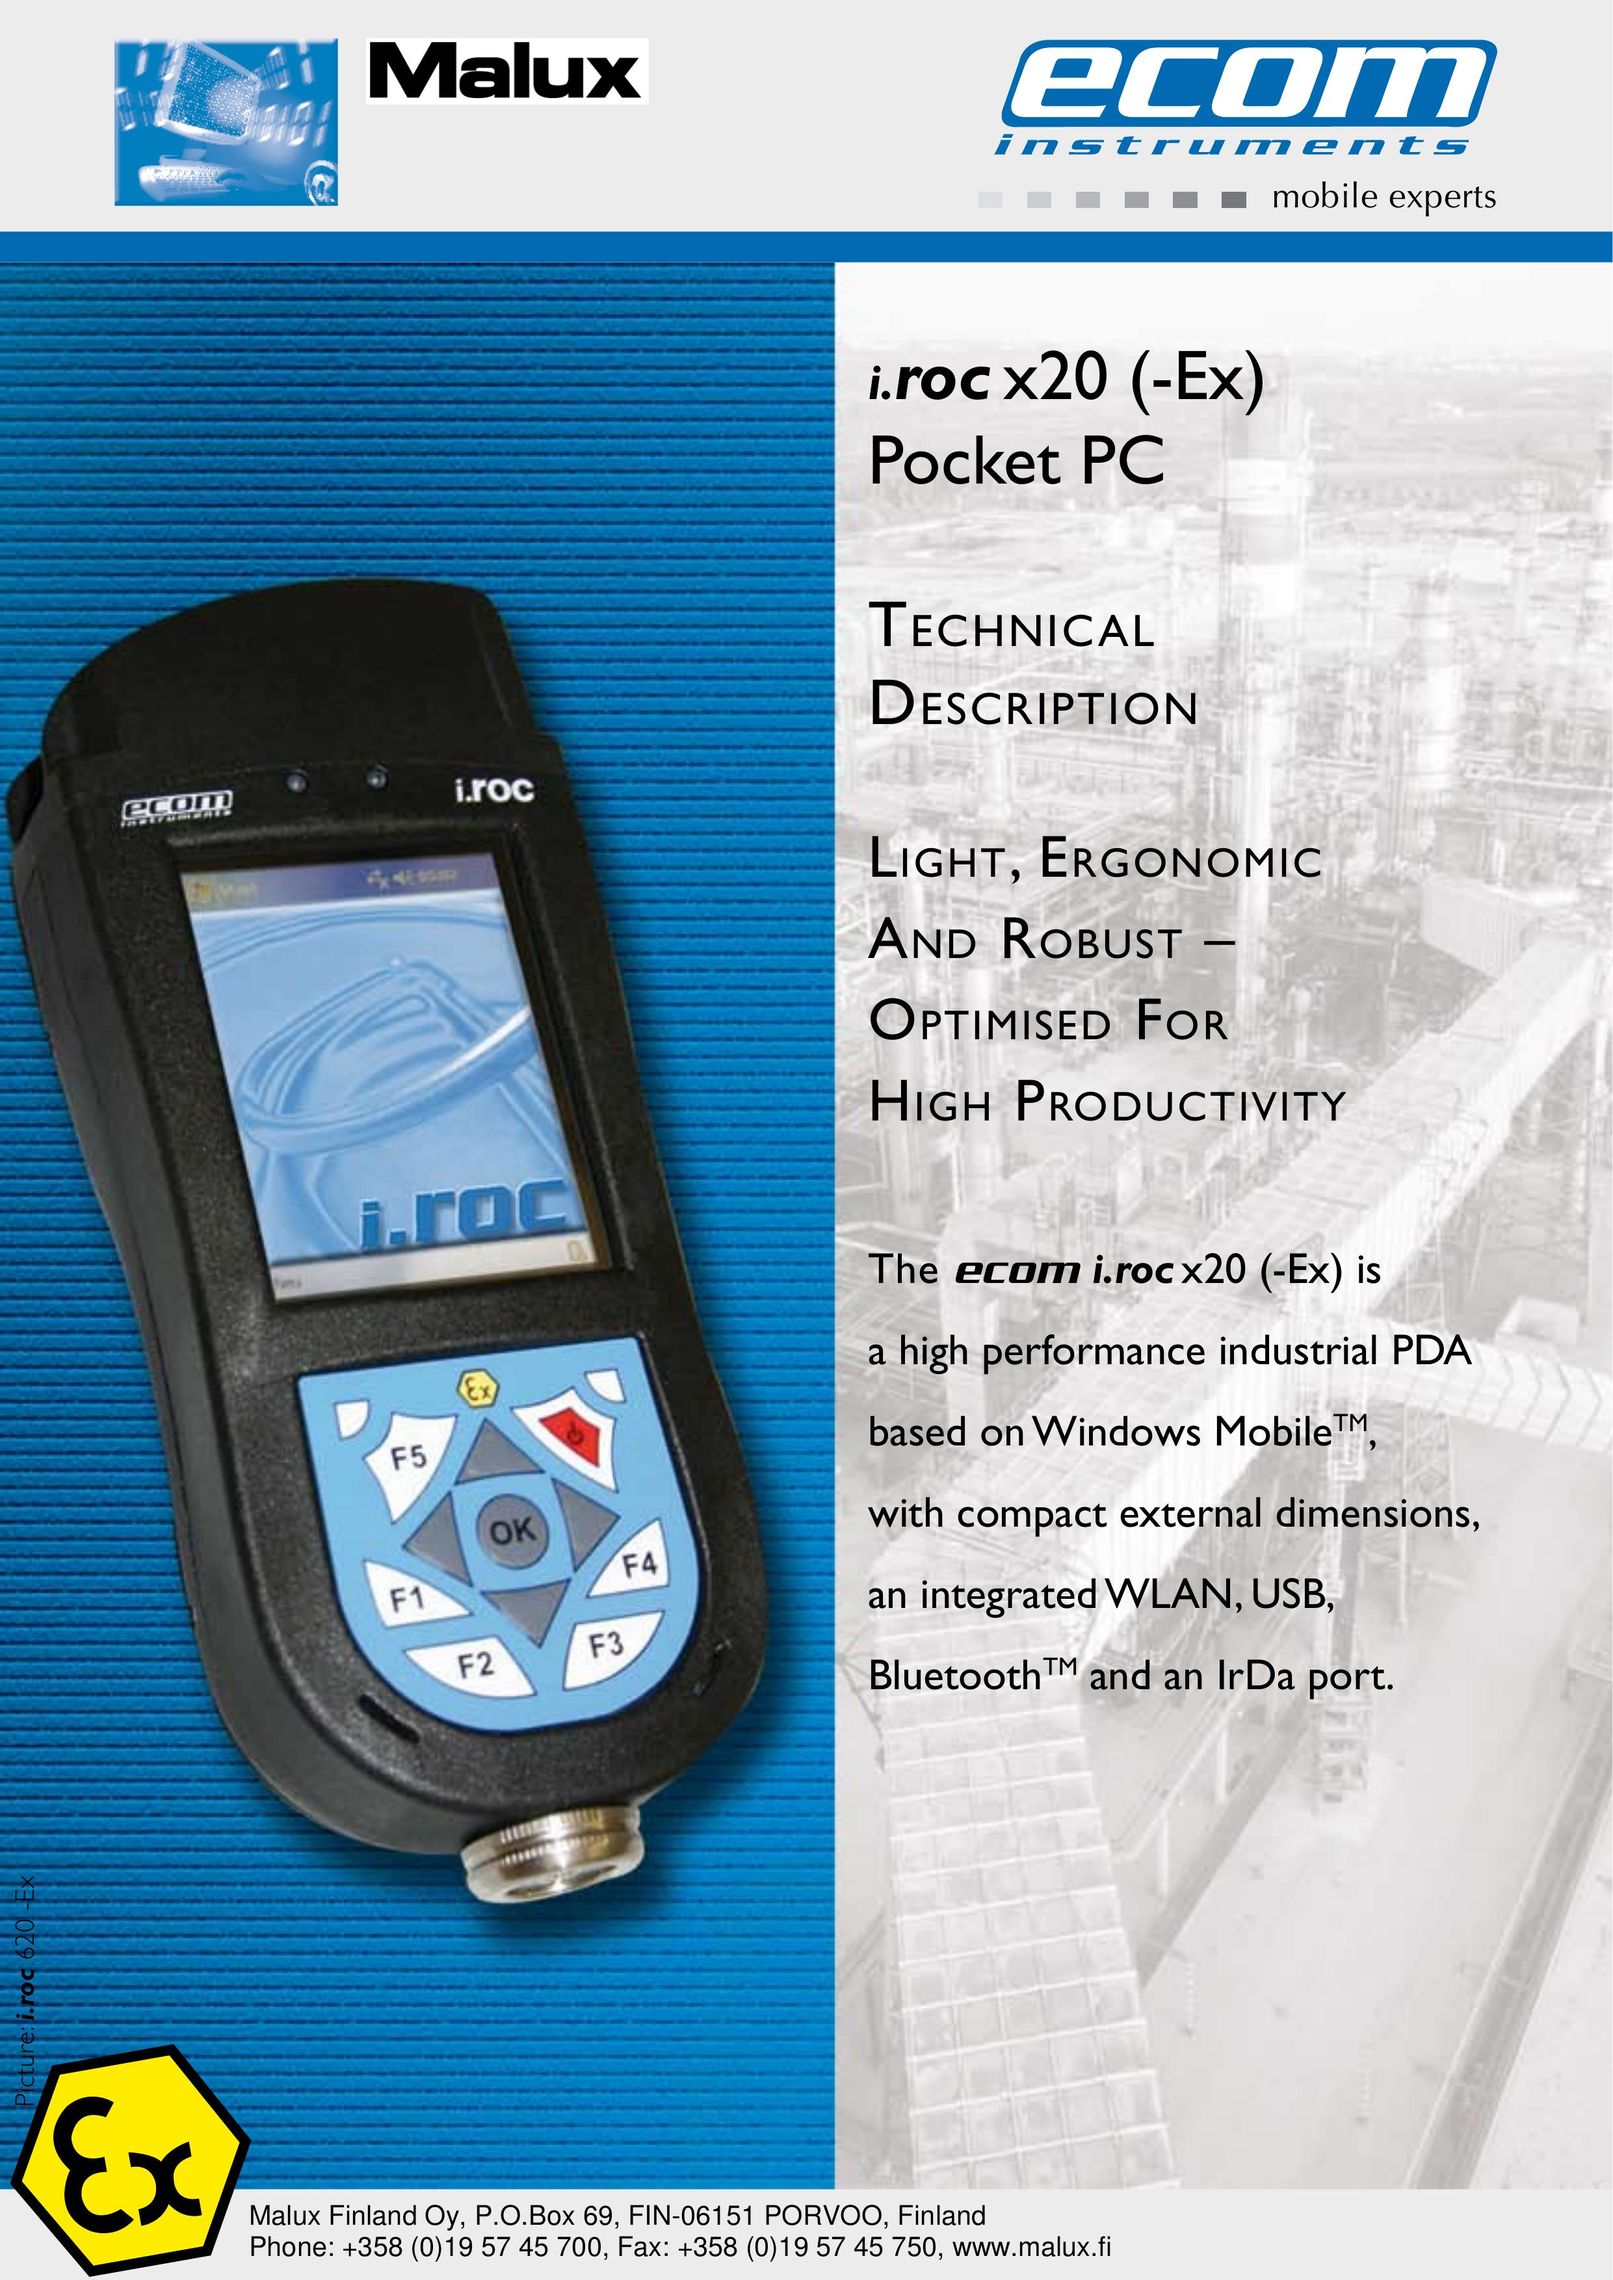 Ecom Instruments 3600 mAh PDAs & Smartphones User Manual